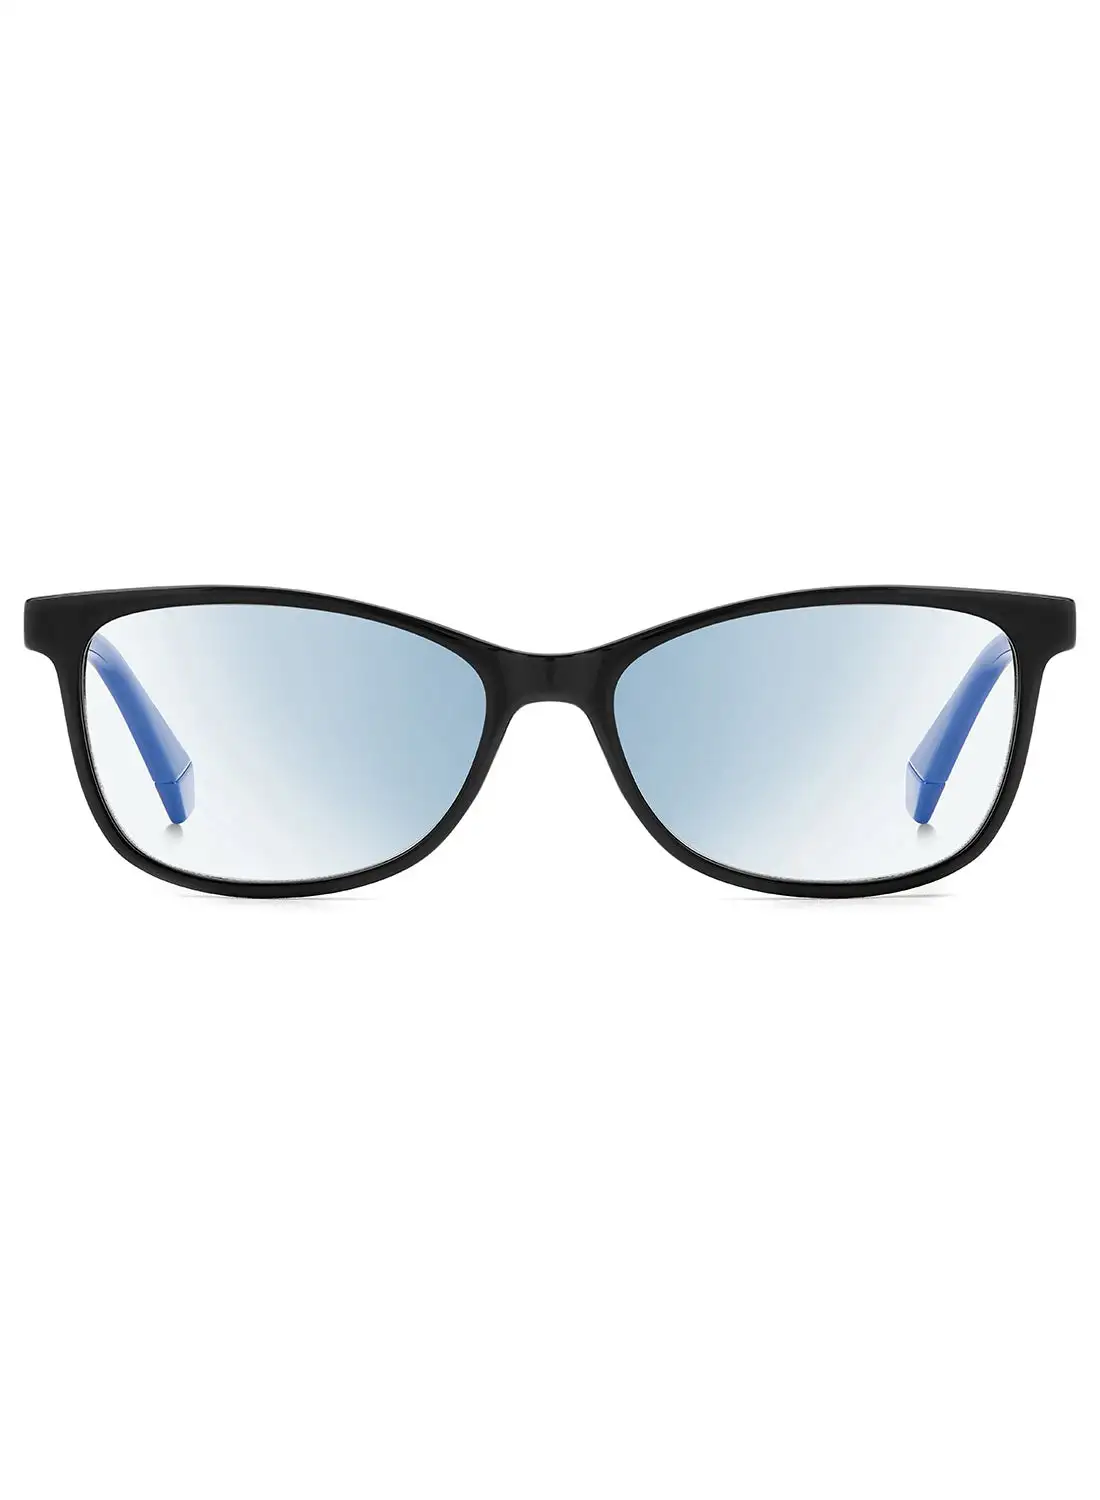 Polaroid Women's Reading Glasses - Lens Size: 53 Mm